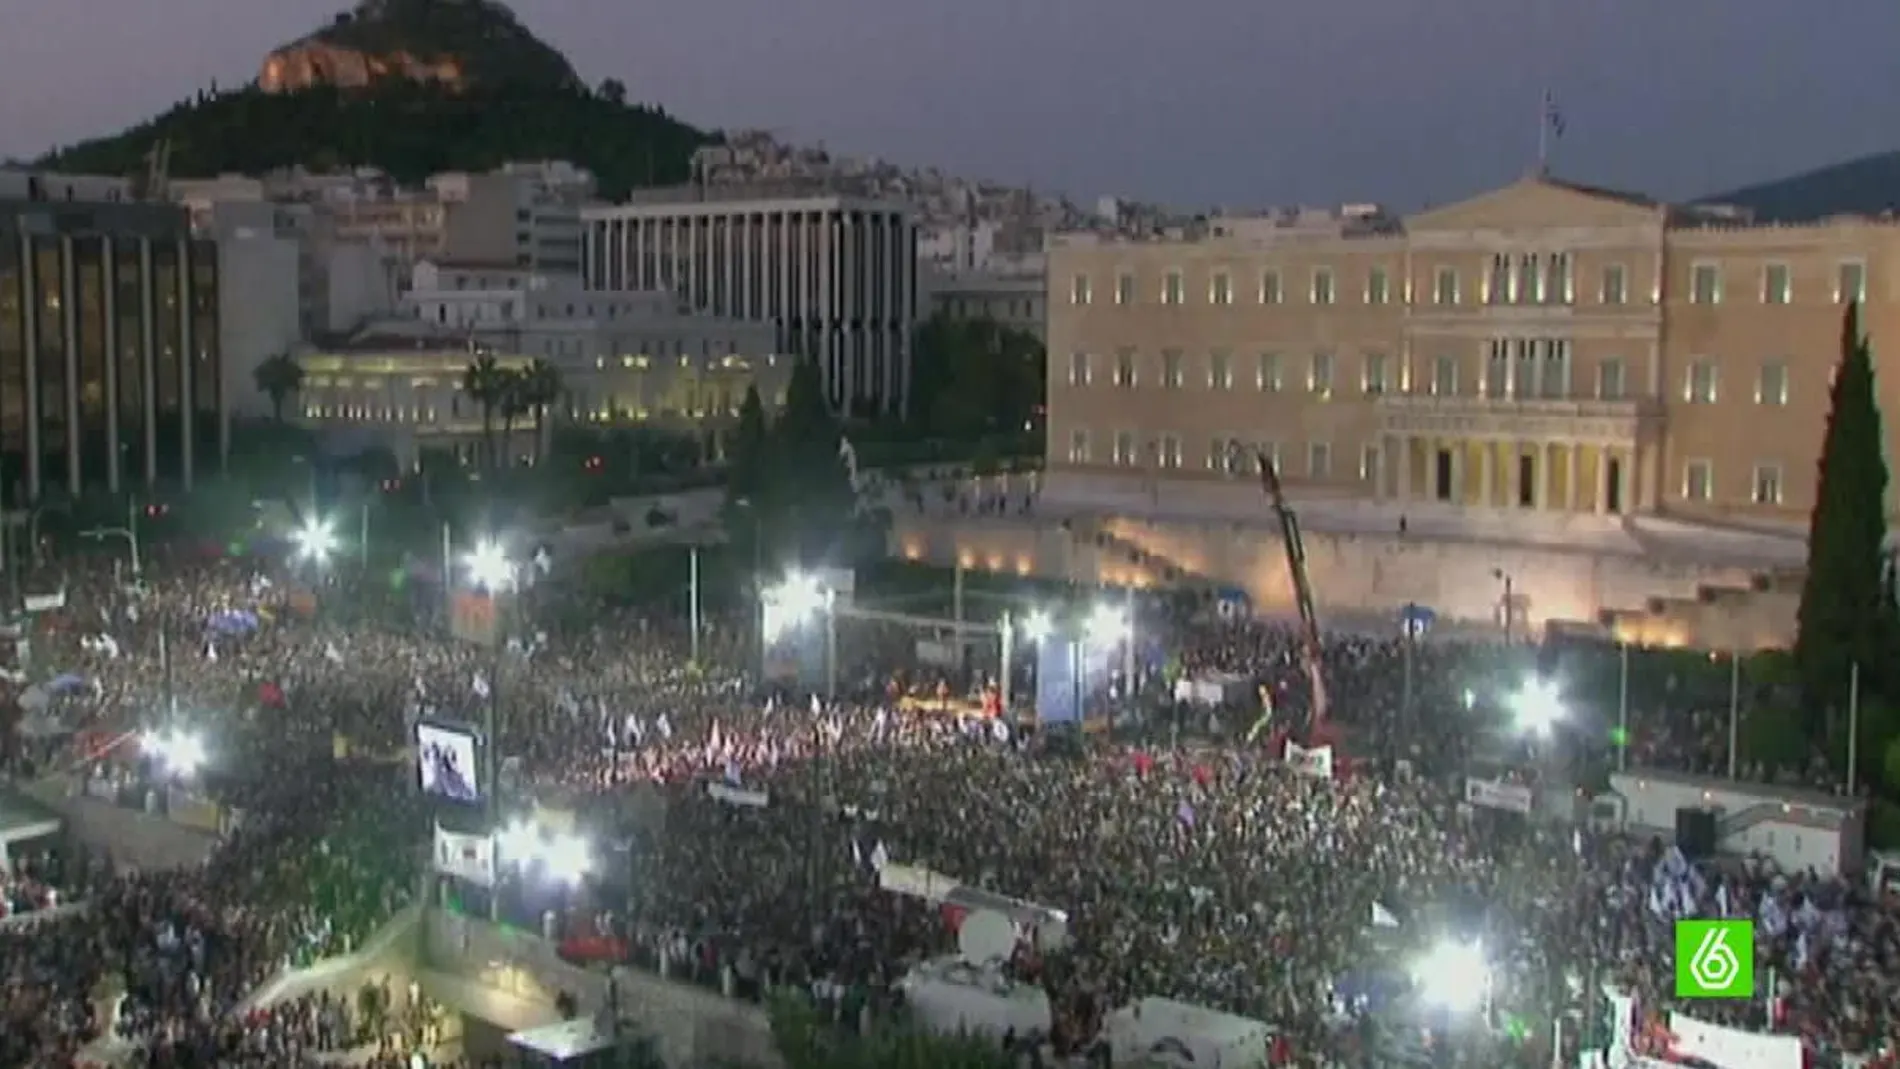 Manifestación en la plaza Syntagma de Atenas